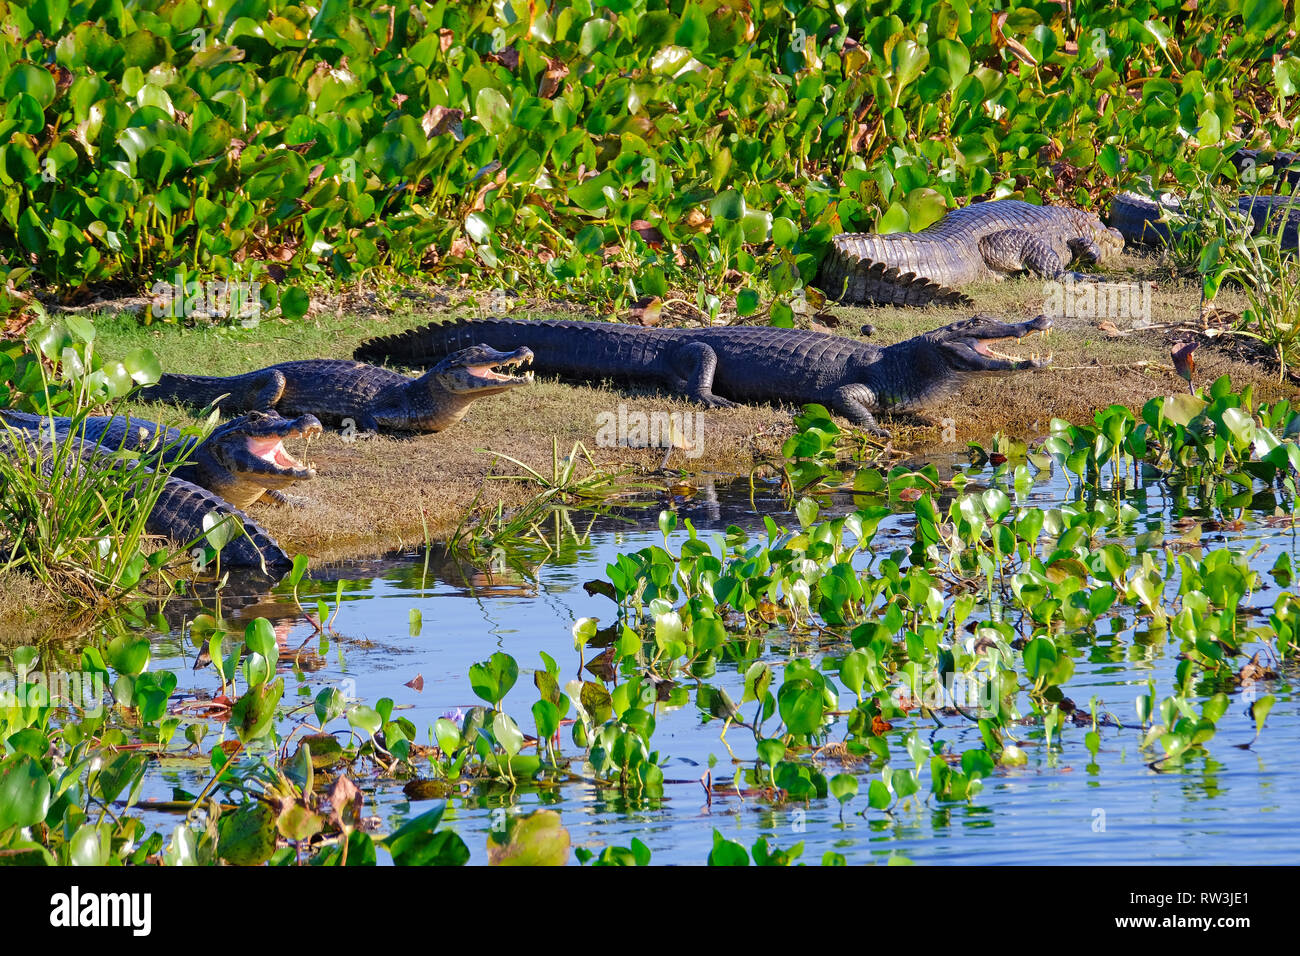 Les Caïmans Yacare, Caiman crocodilus yacare Jacare, dans les prairies humides du Pantanal, Corumba, Mato Grosso do Sul, Brésil Banque D'Images